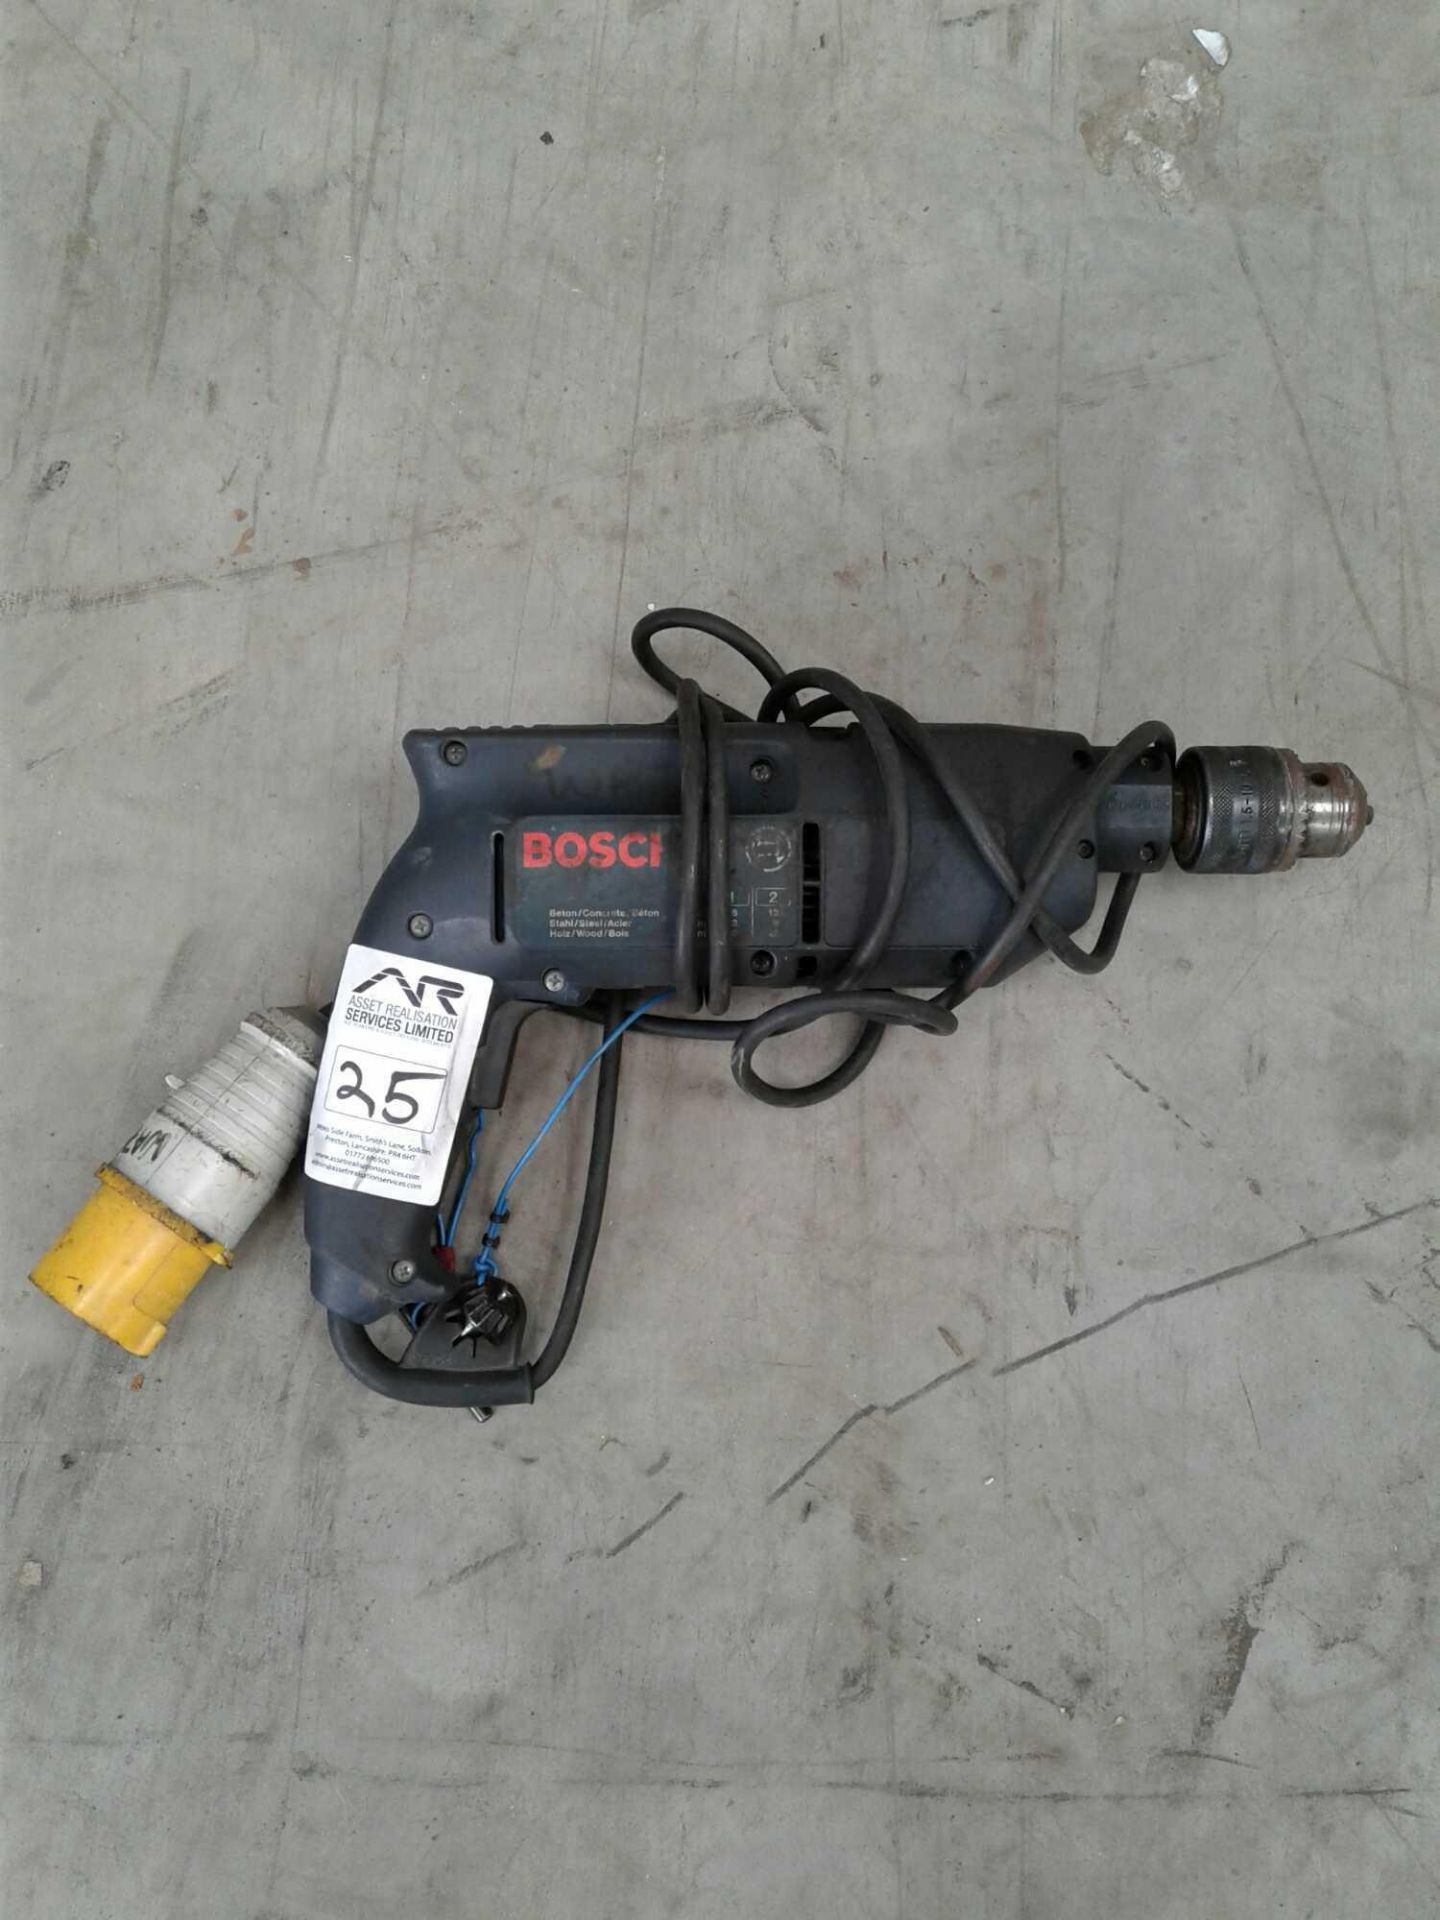 Bosch rotary drill 110-volt